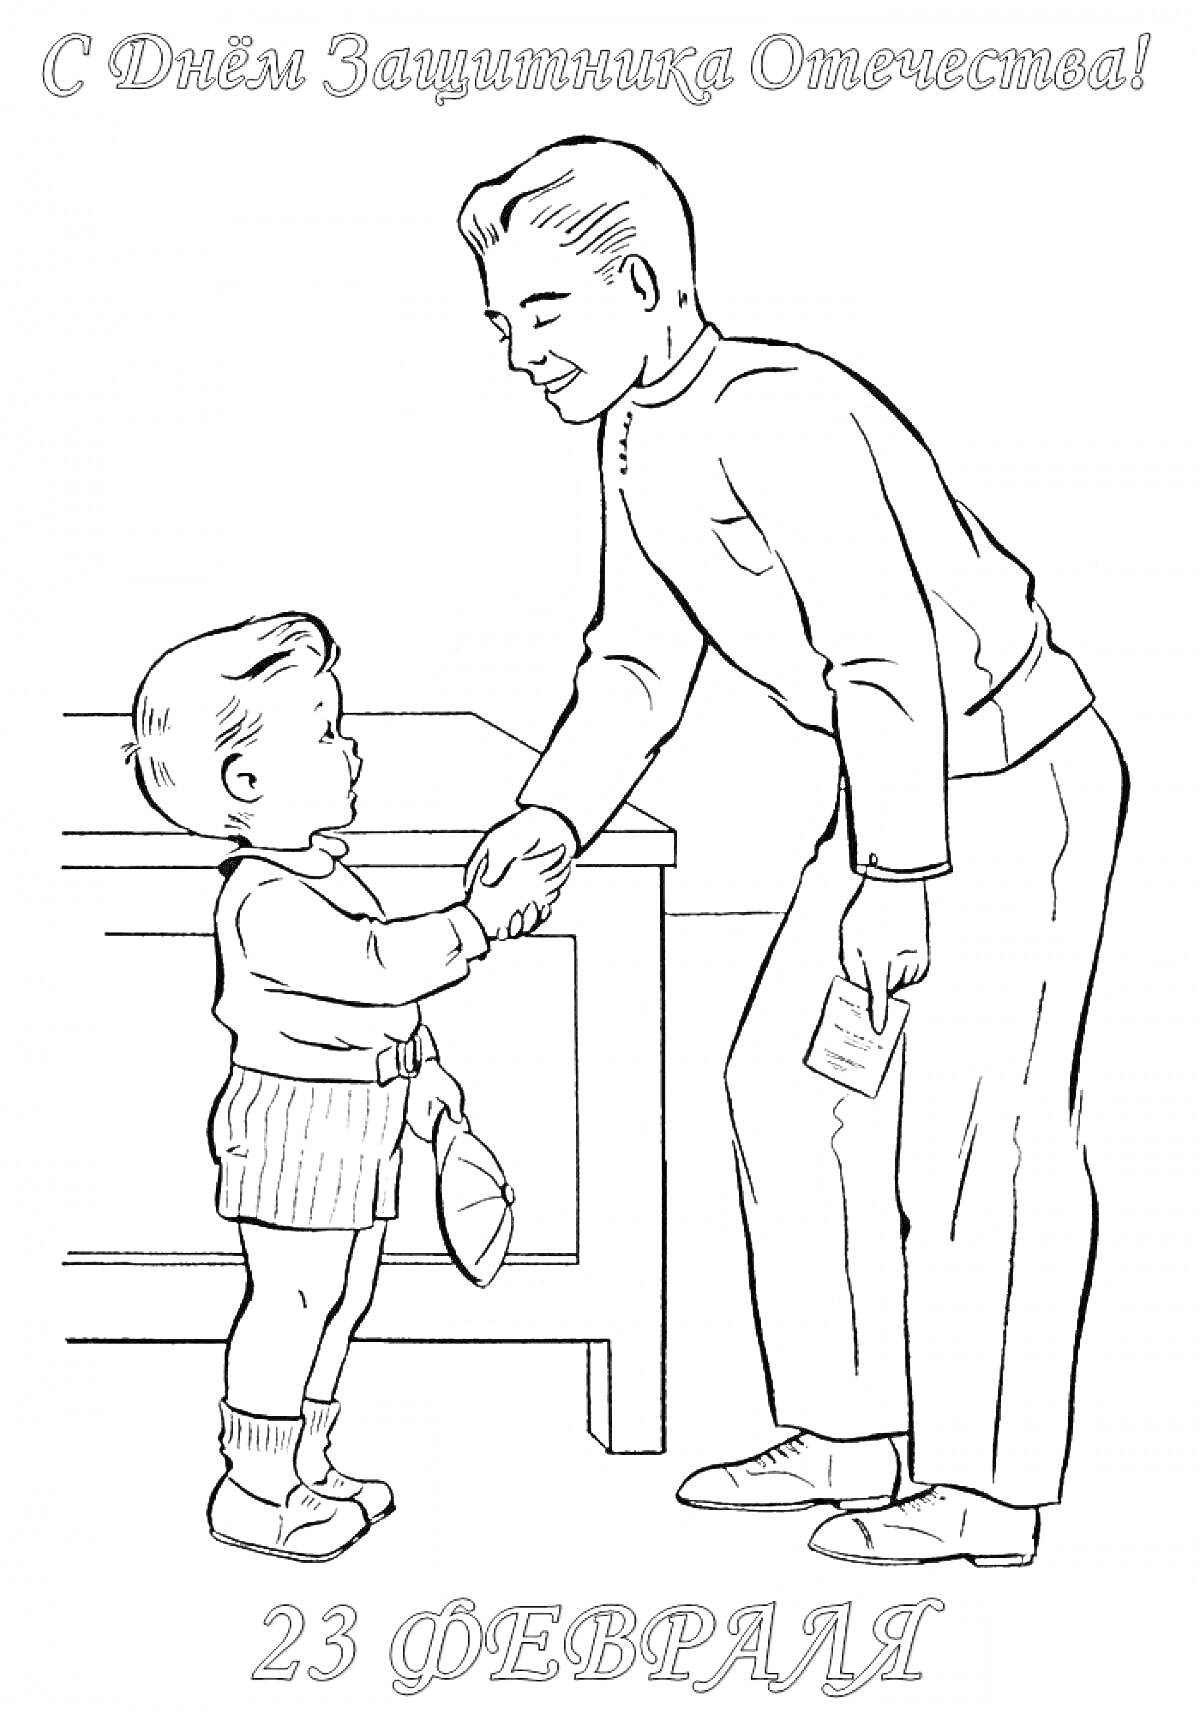 На этой раскраске изображены взрослый мужчина и маленький мальчик, пожимающие друг другу руки. Взрослый мужчина держит письмо в другой руке. На заднем плане видно стол. Сверху текст 